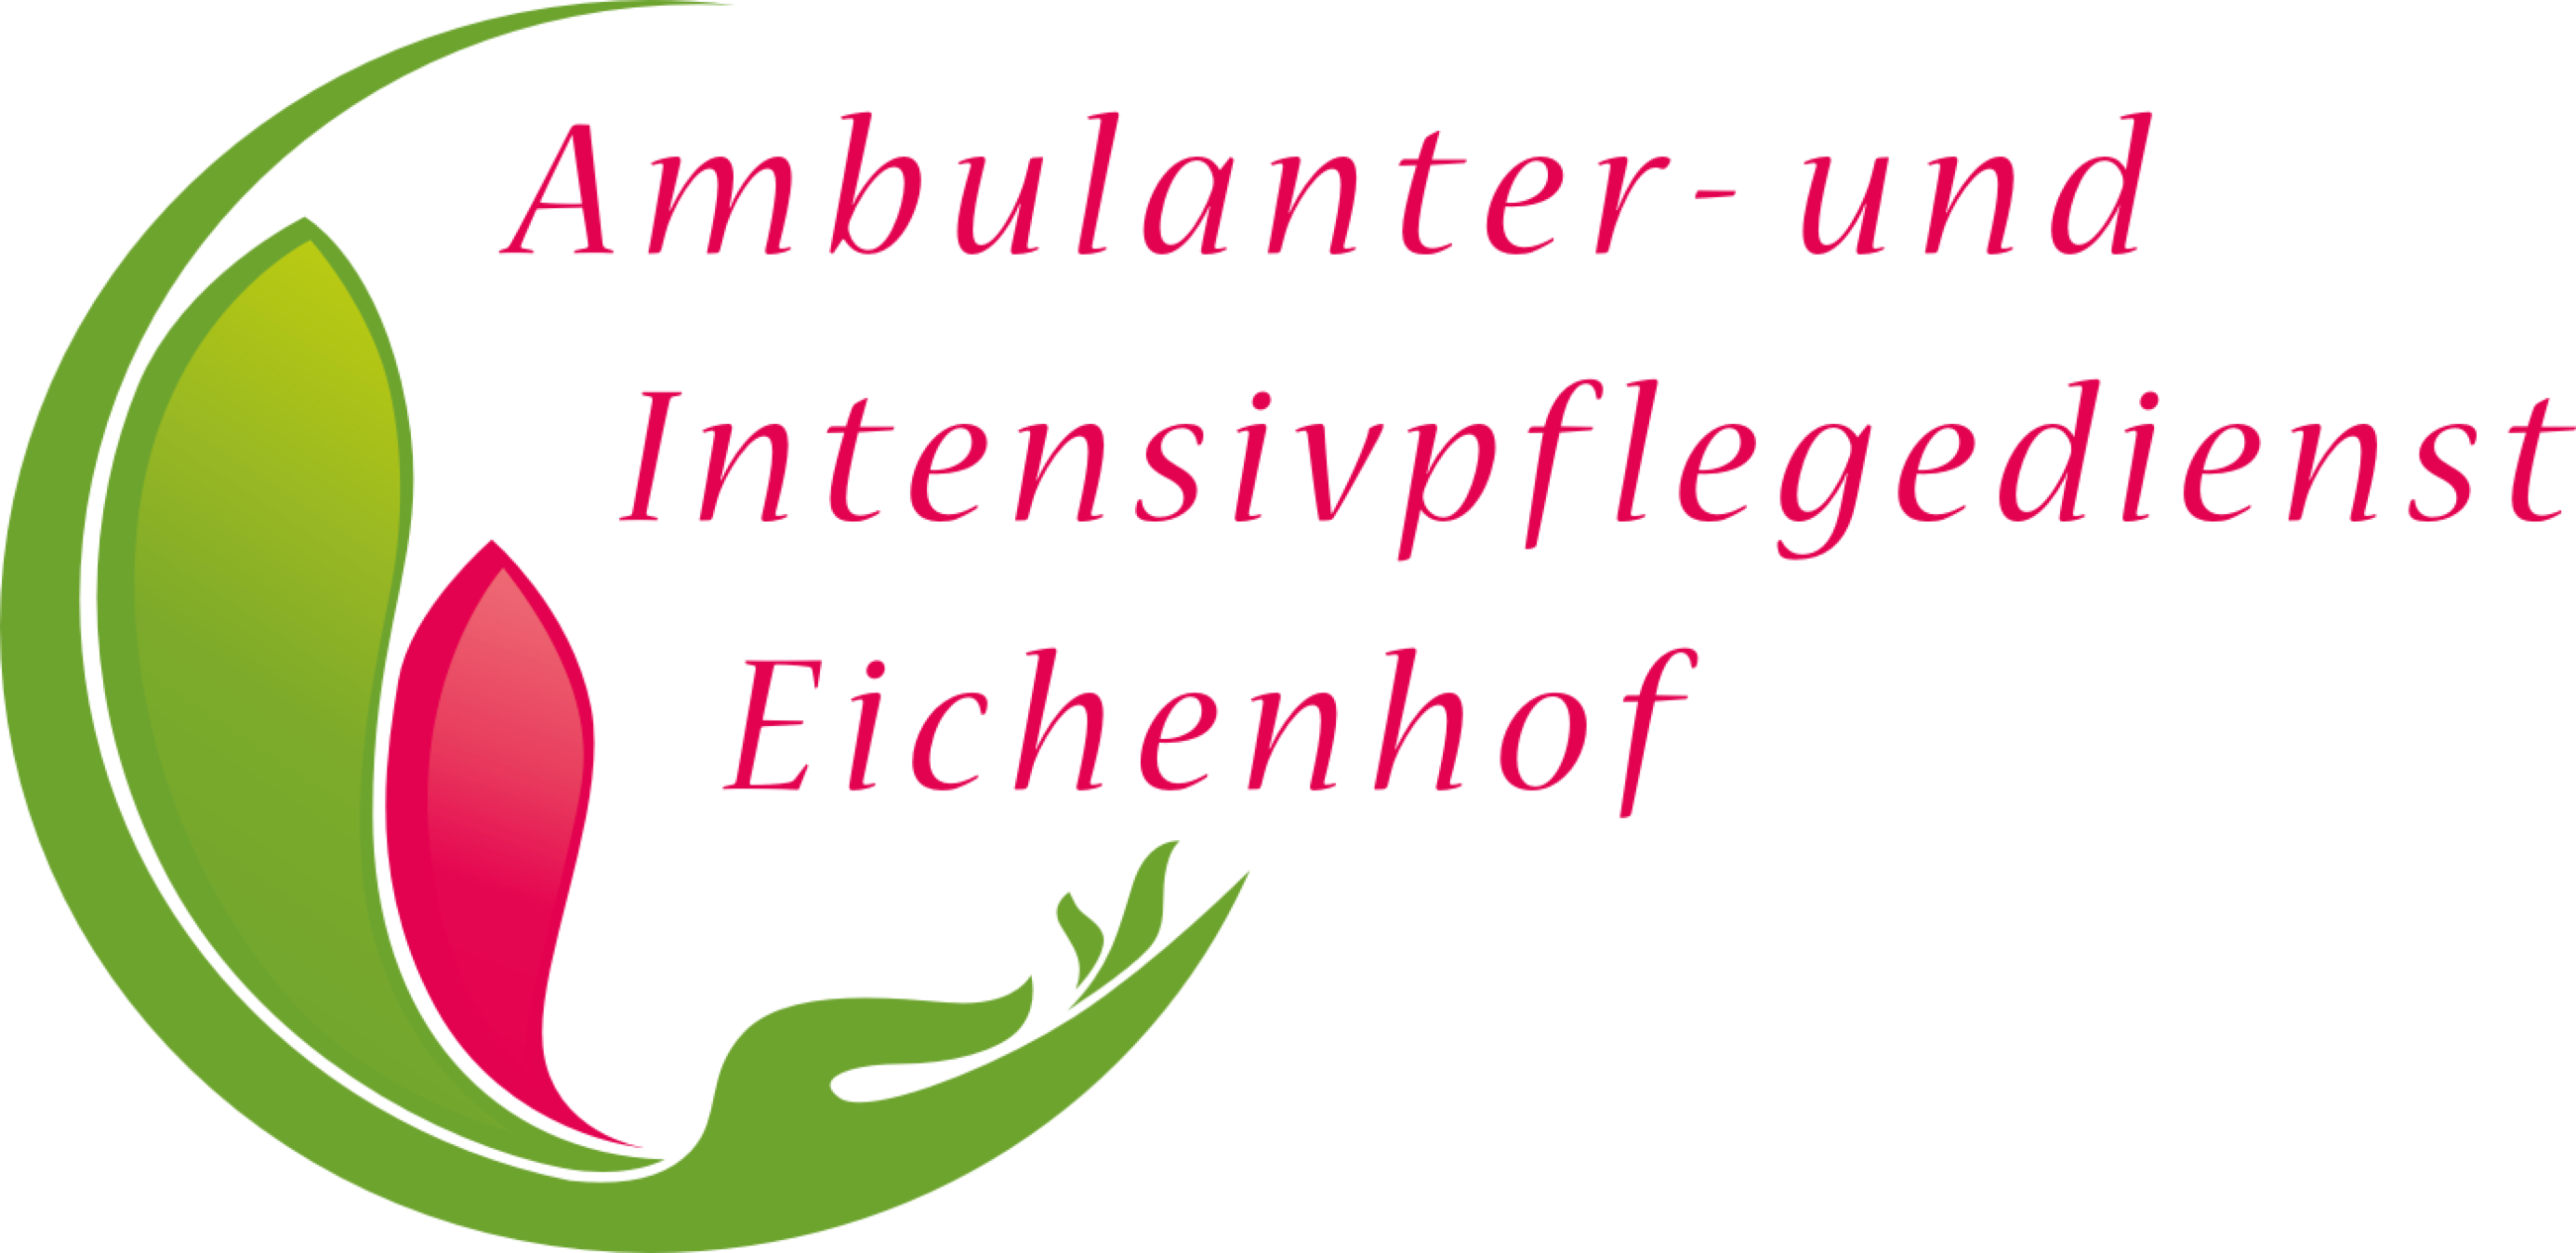 Logo: Ambulanter- und Intensivpflegedienst Eichenhof Inh. Nicole Genzow-Richter